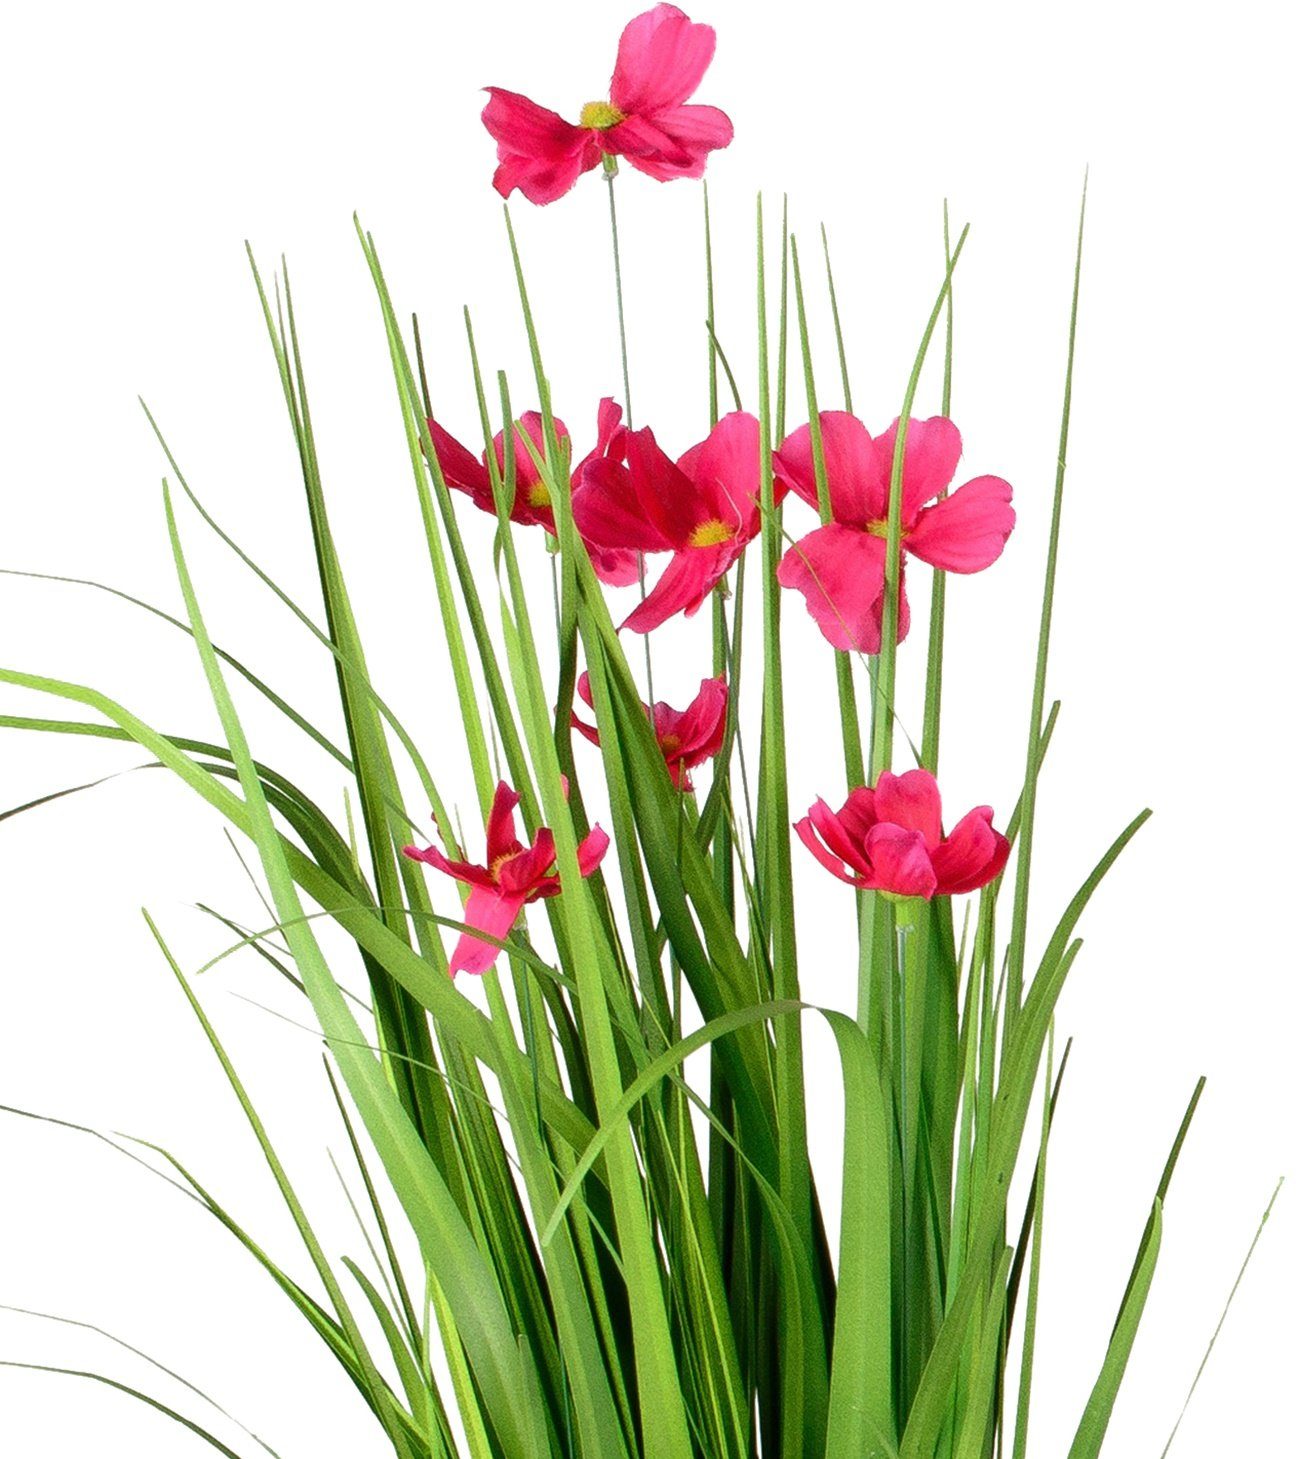 Kunstblume dekojohnson Künstliche blühende Cosmea-Blume als Bund Deko-Pflanze Kunstpflanze, dekojohnson, Höhe 60 cm